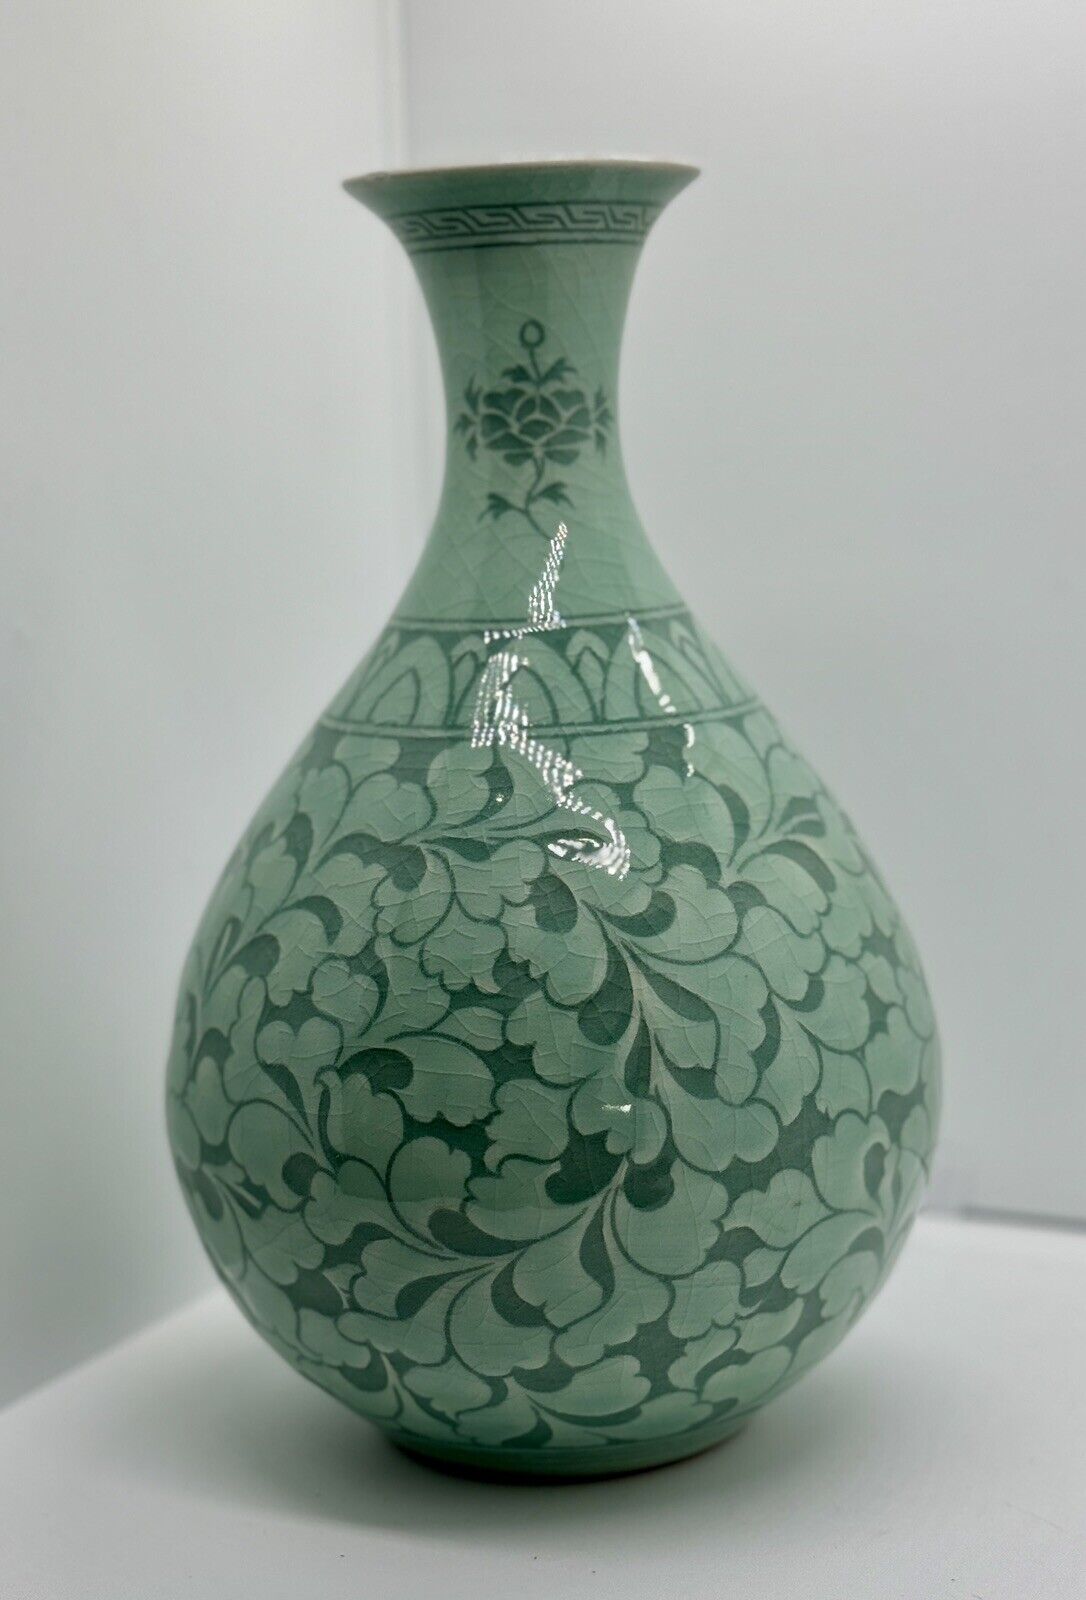 Vintage Korean Celadon Vase Crackled Glazed Green ~ Signed